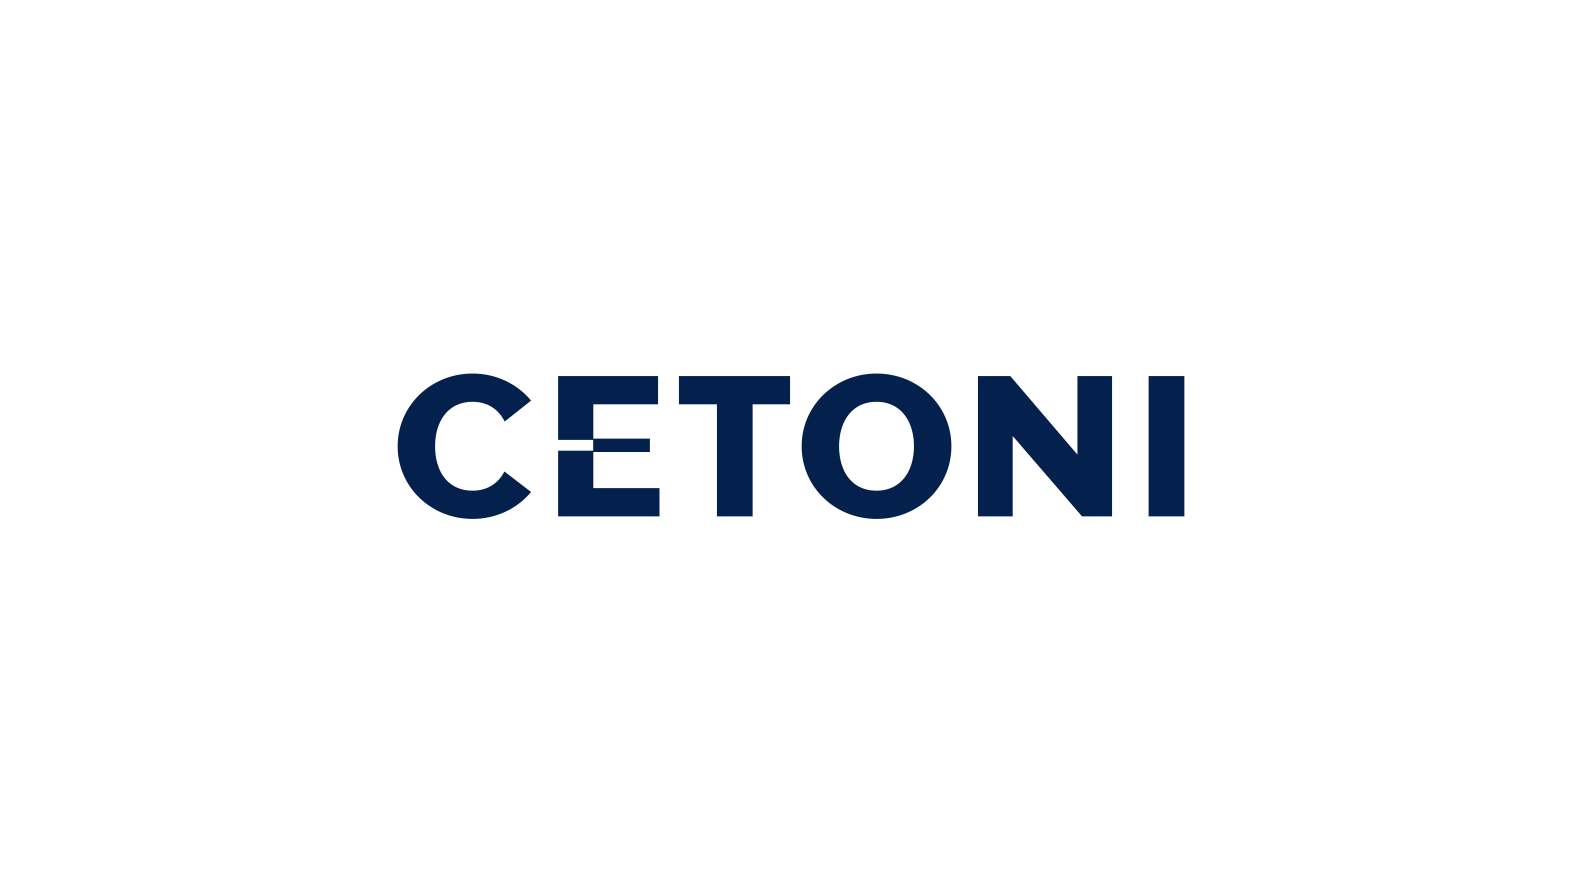 Logo und Typografie für Cetoni